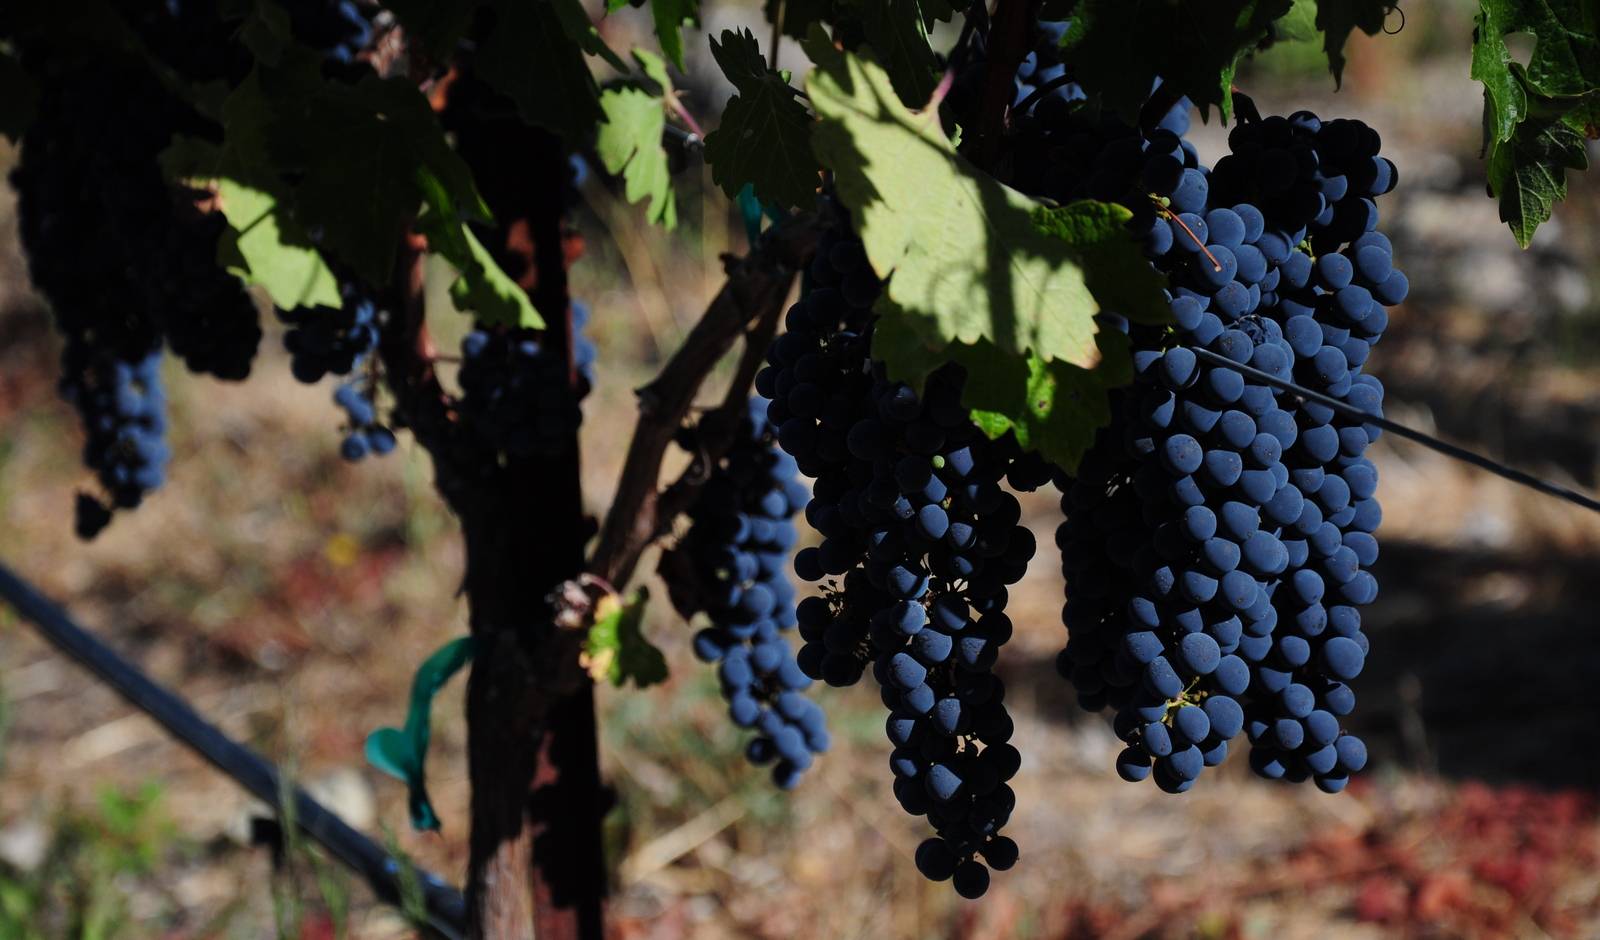 Сорт винограда каберне северный фото и описание